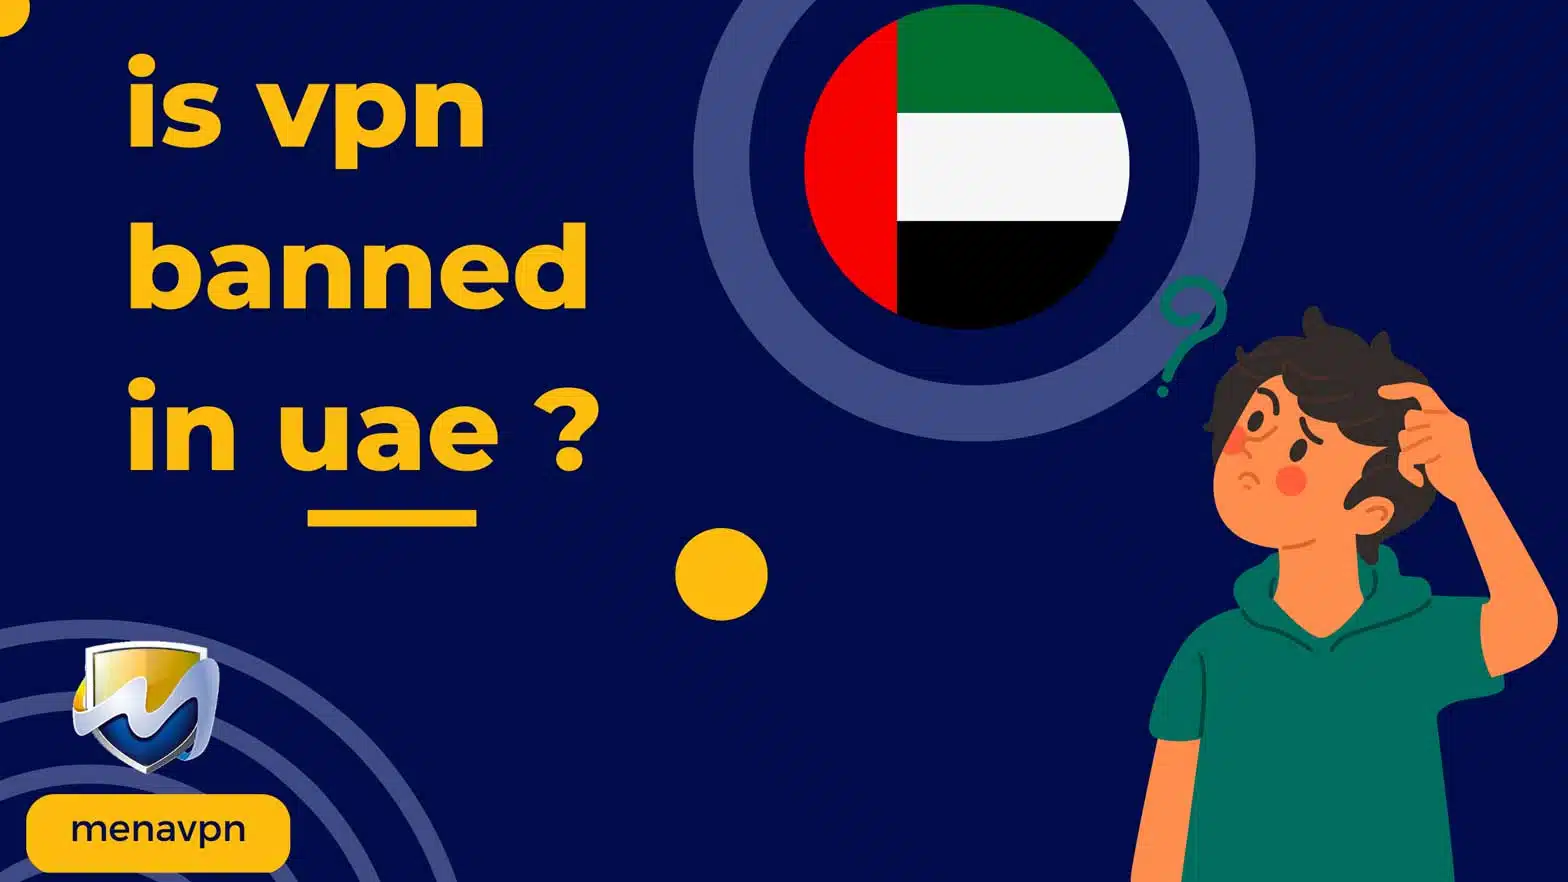 VPN banned in UAE